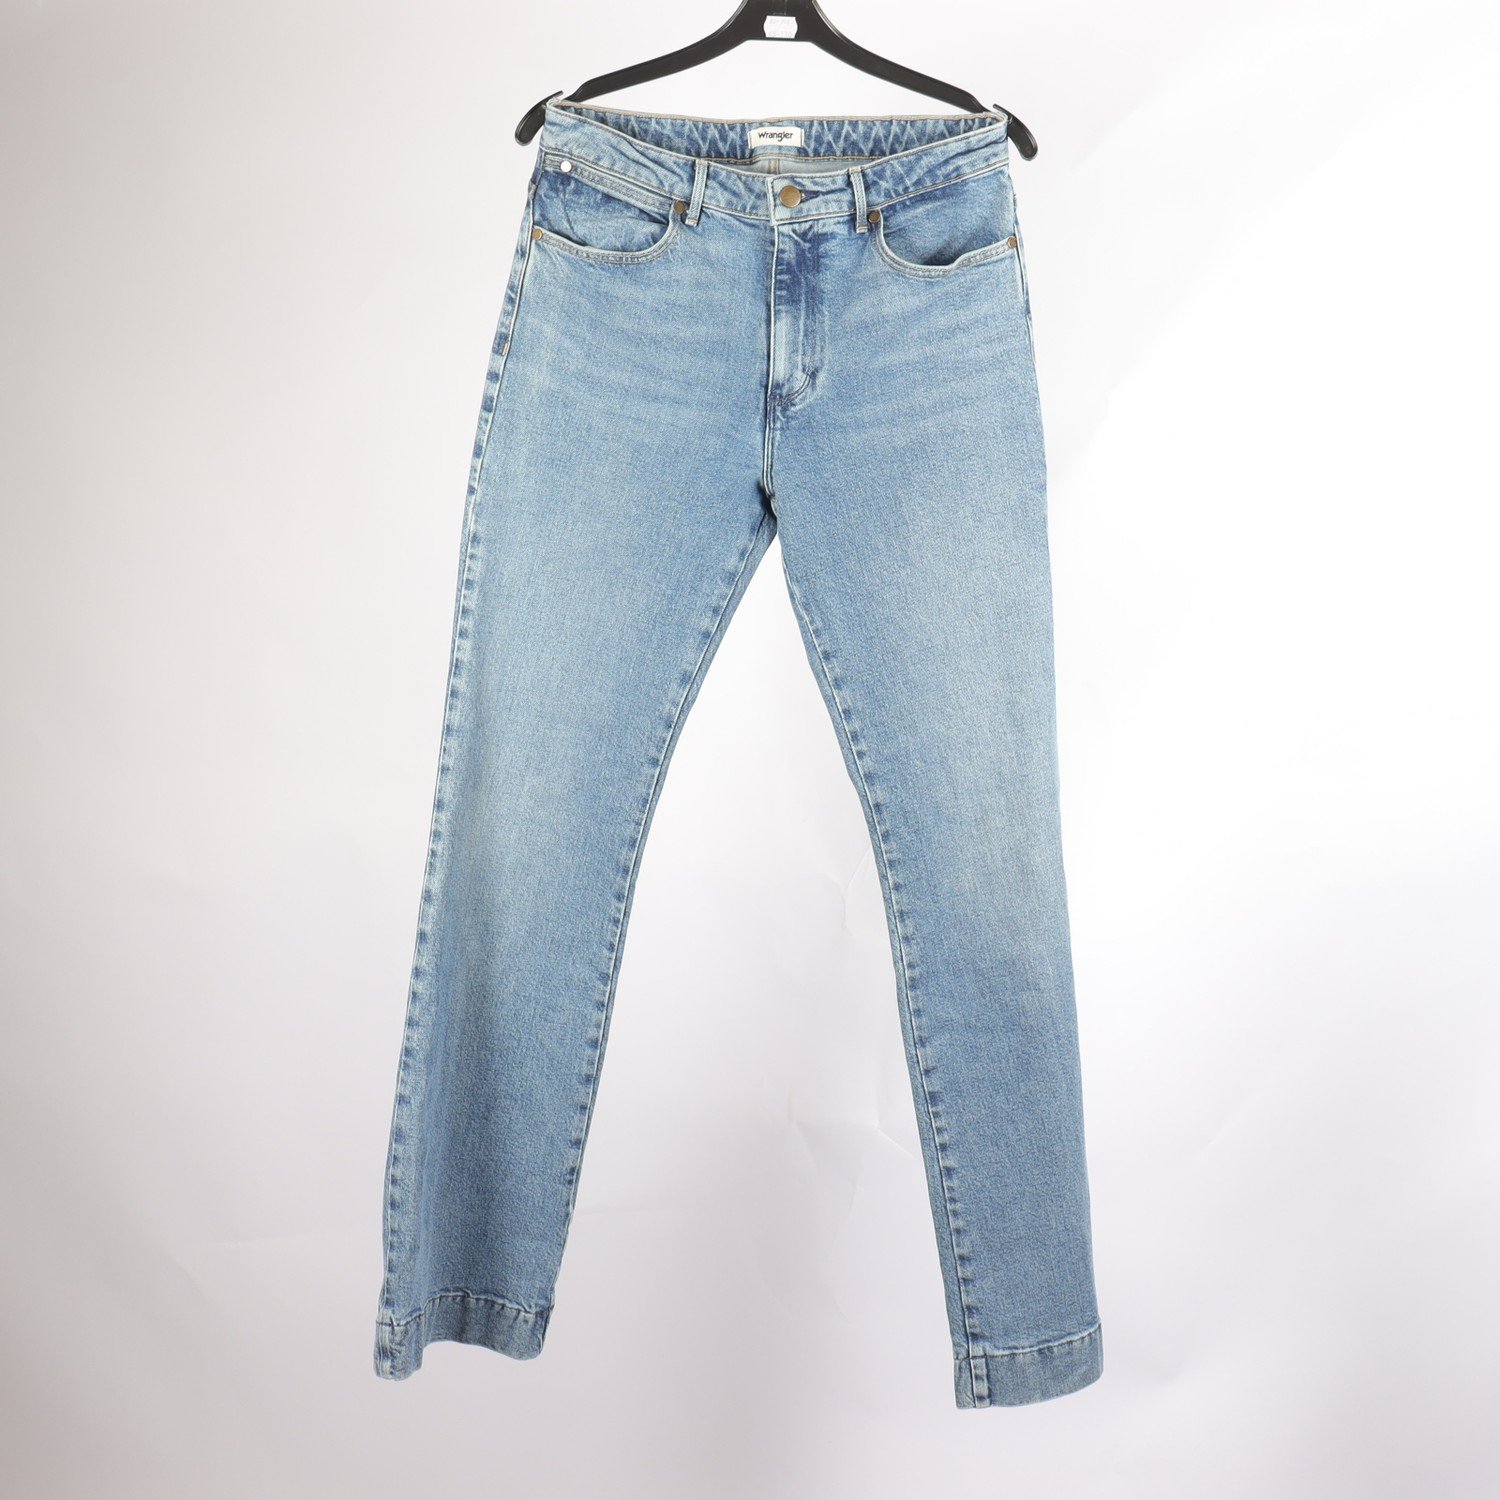 Jeans, Wrangler, W28, L32